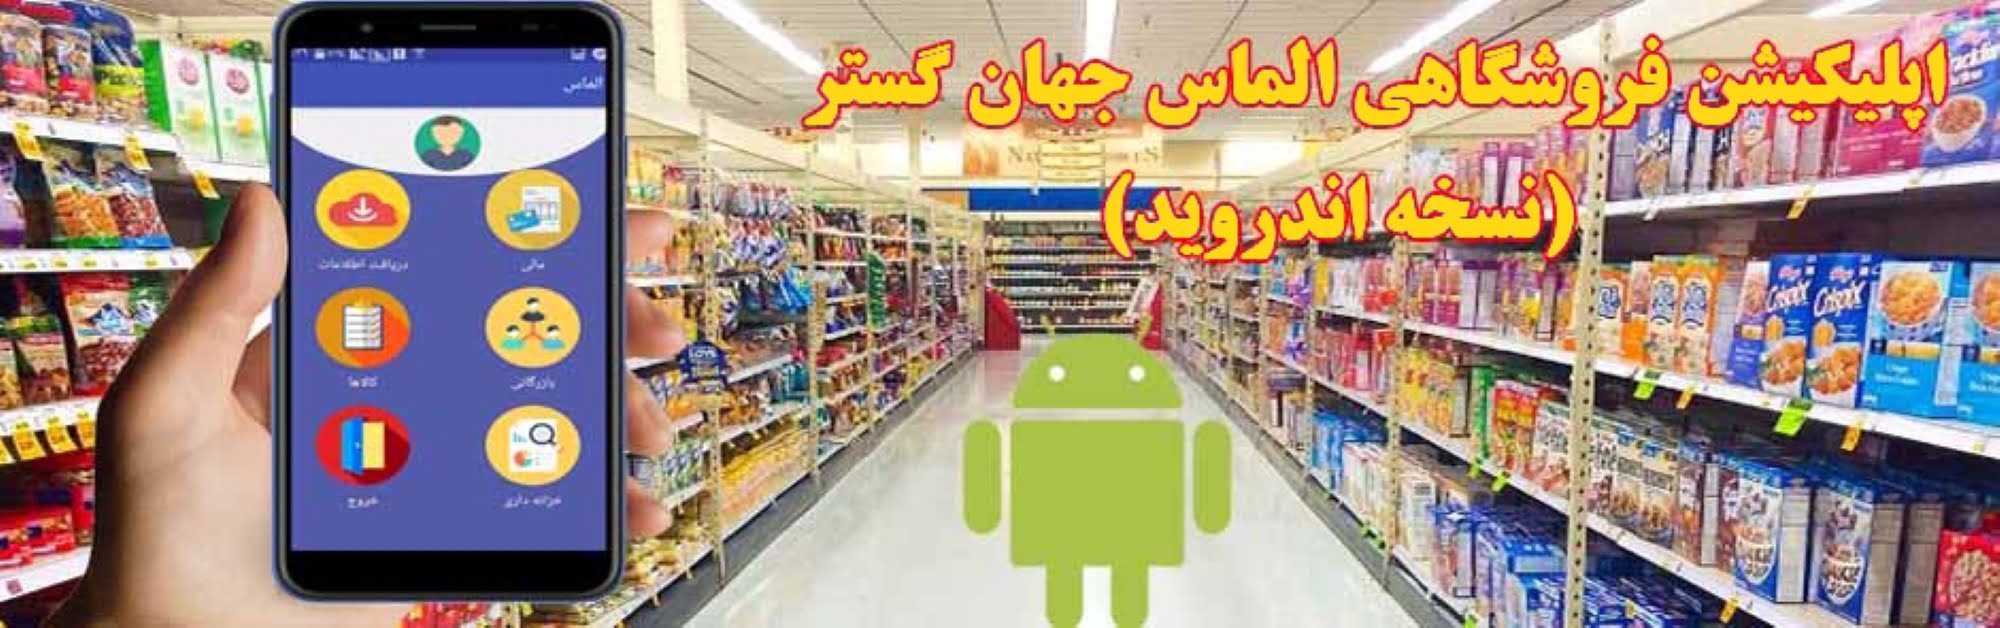 Almas android shop app